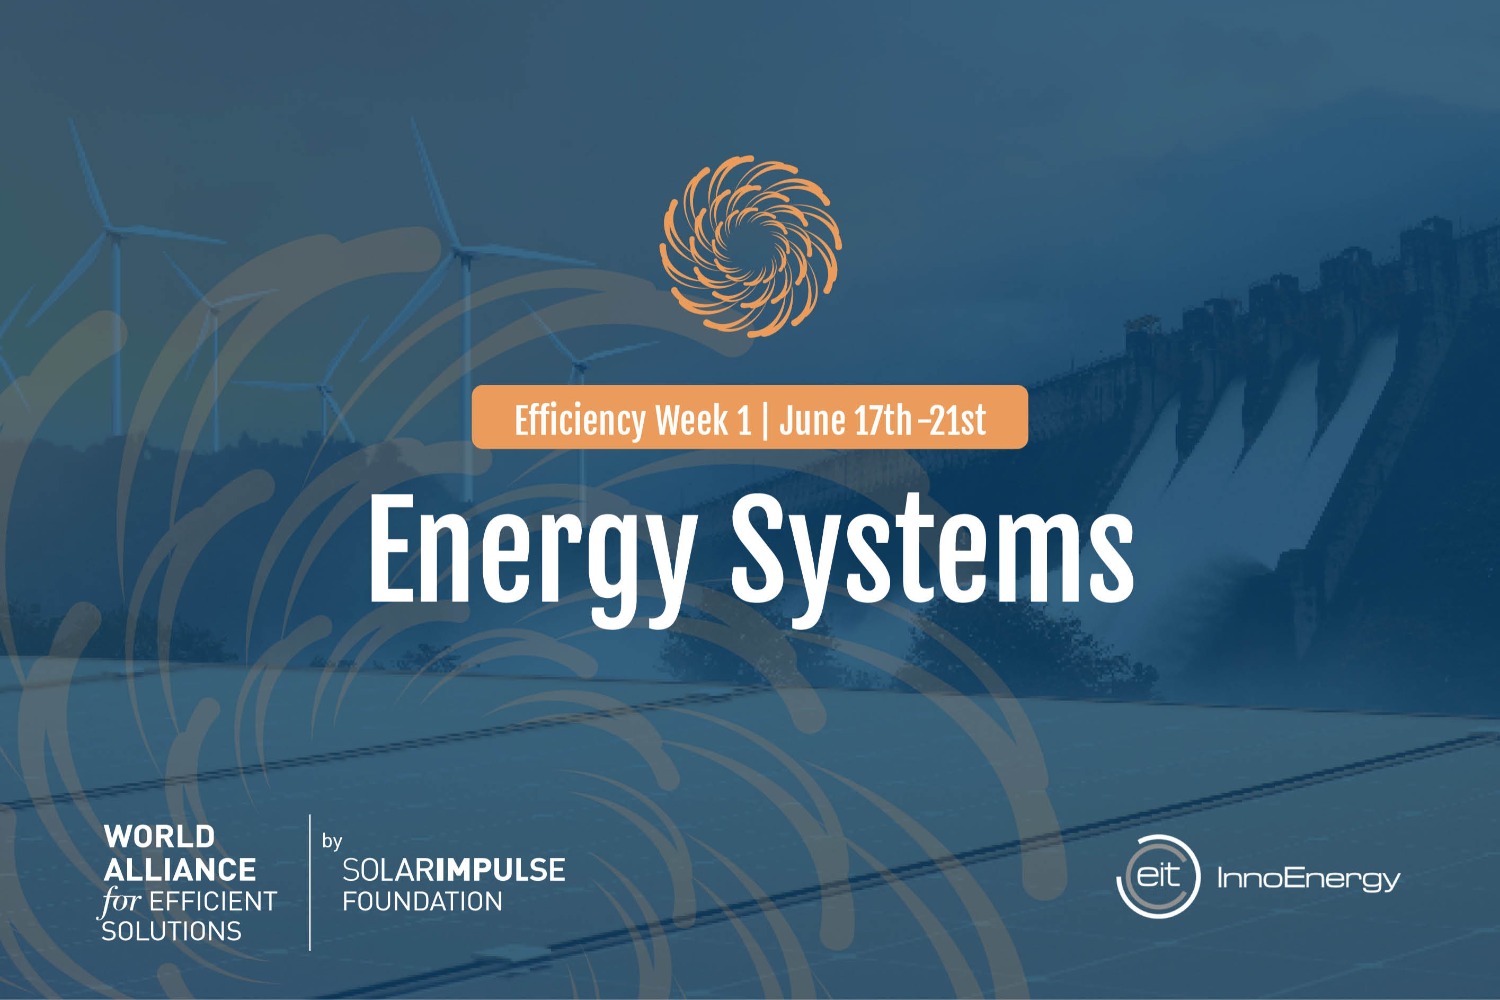 Semaine de l'efficacité : Systèmes énergétiques